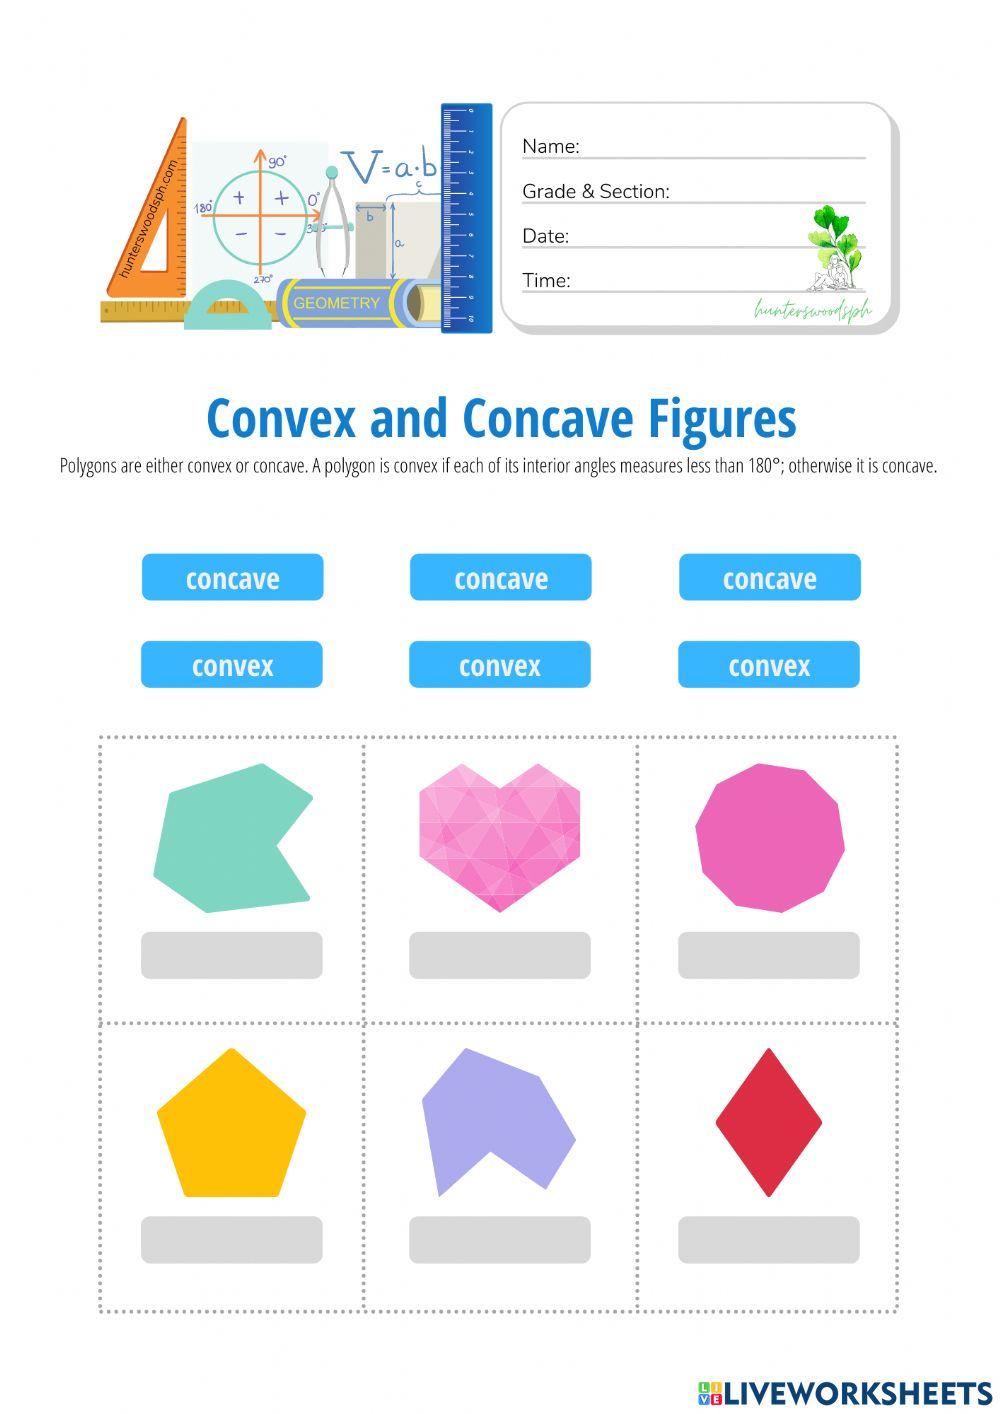 Concave vs Convex Polygons